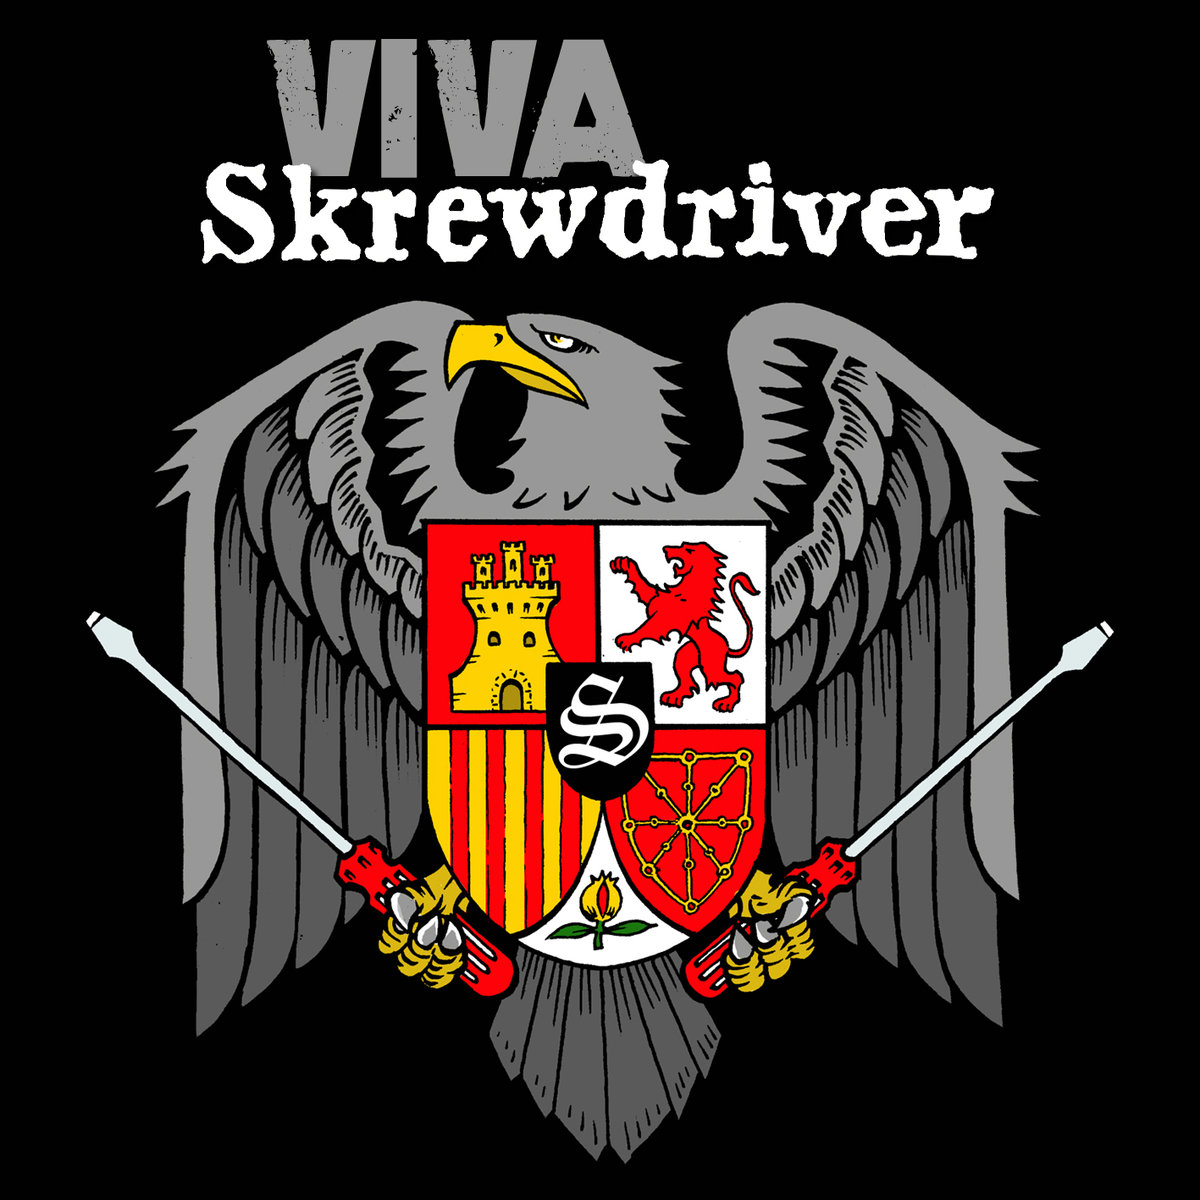 Viva Skrewdriver LP